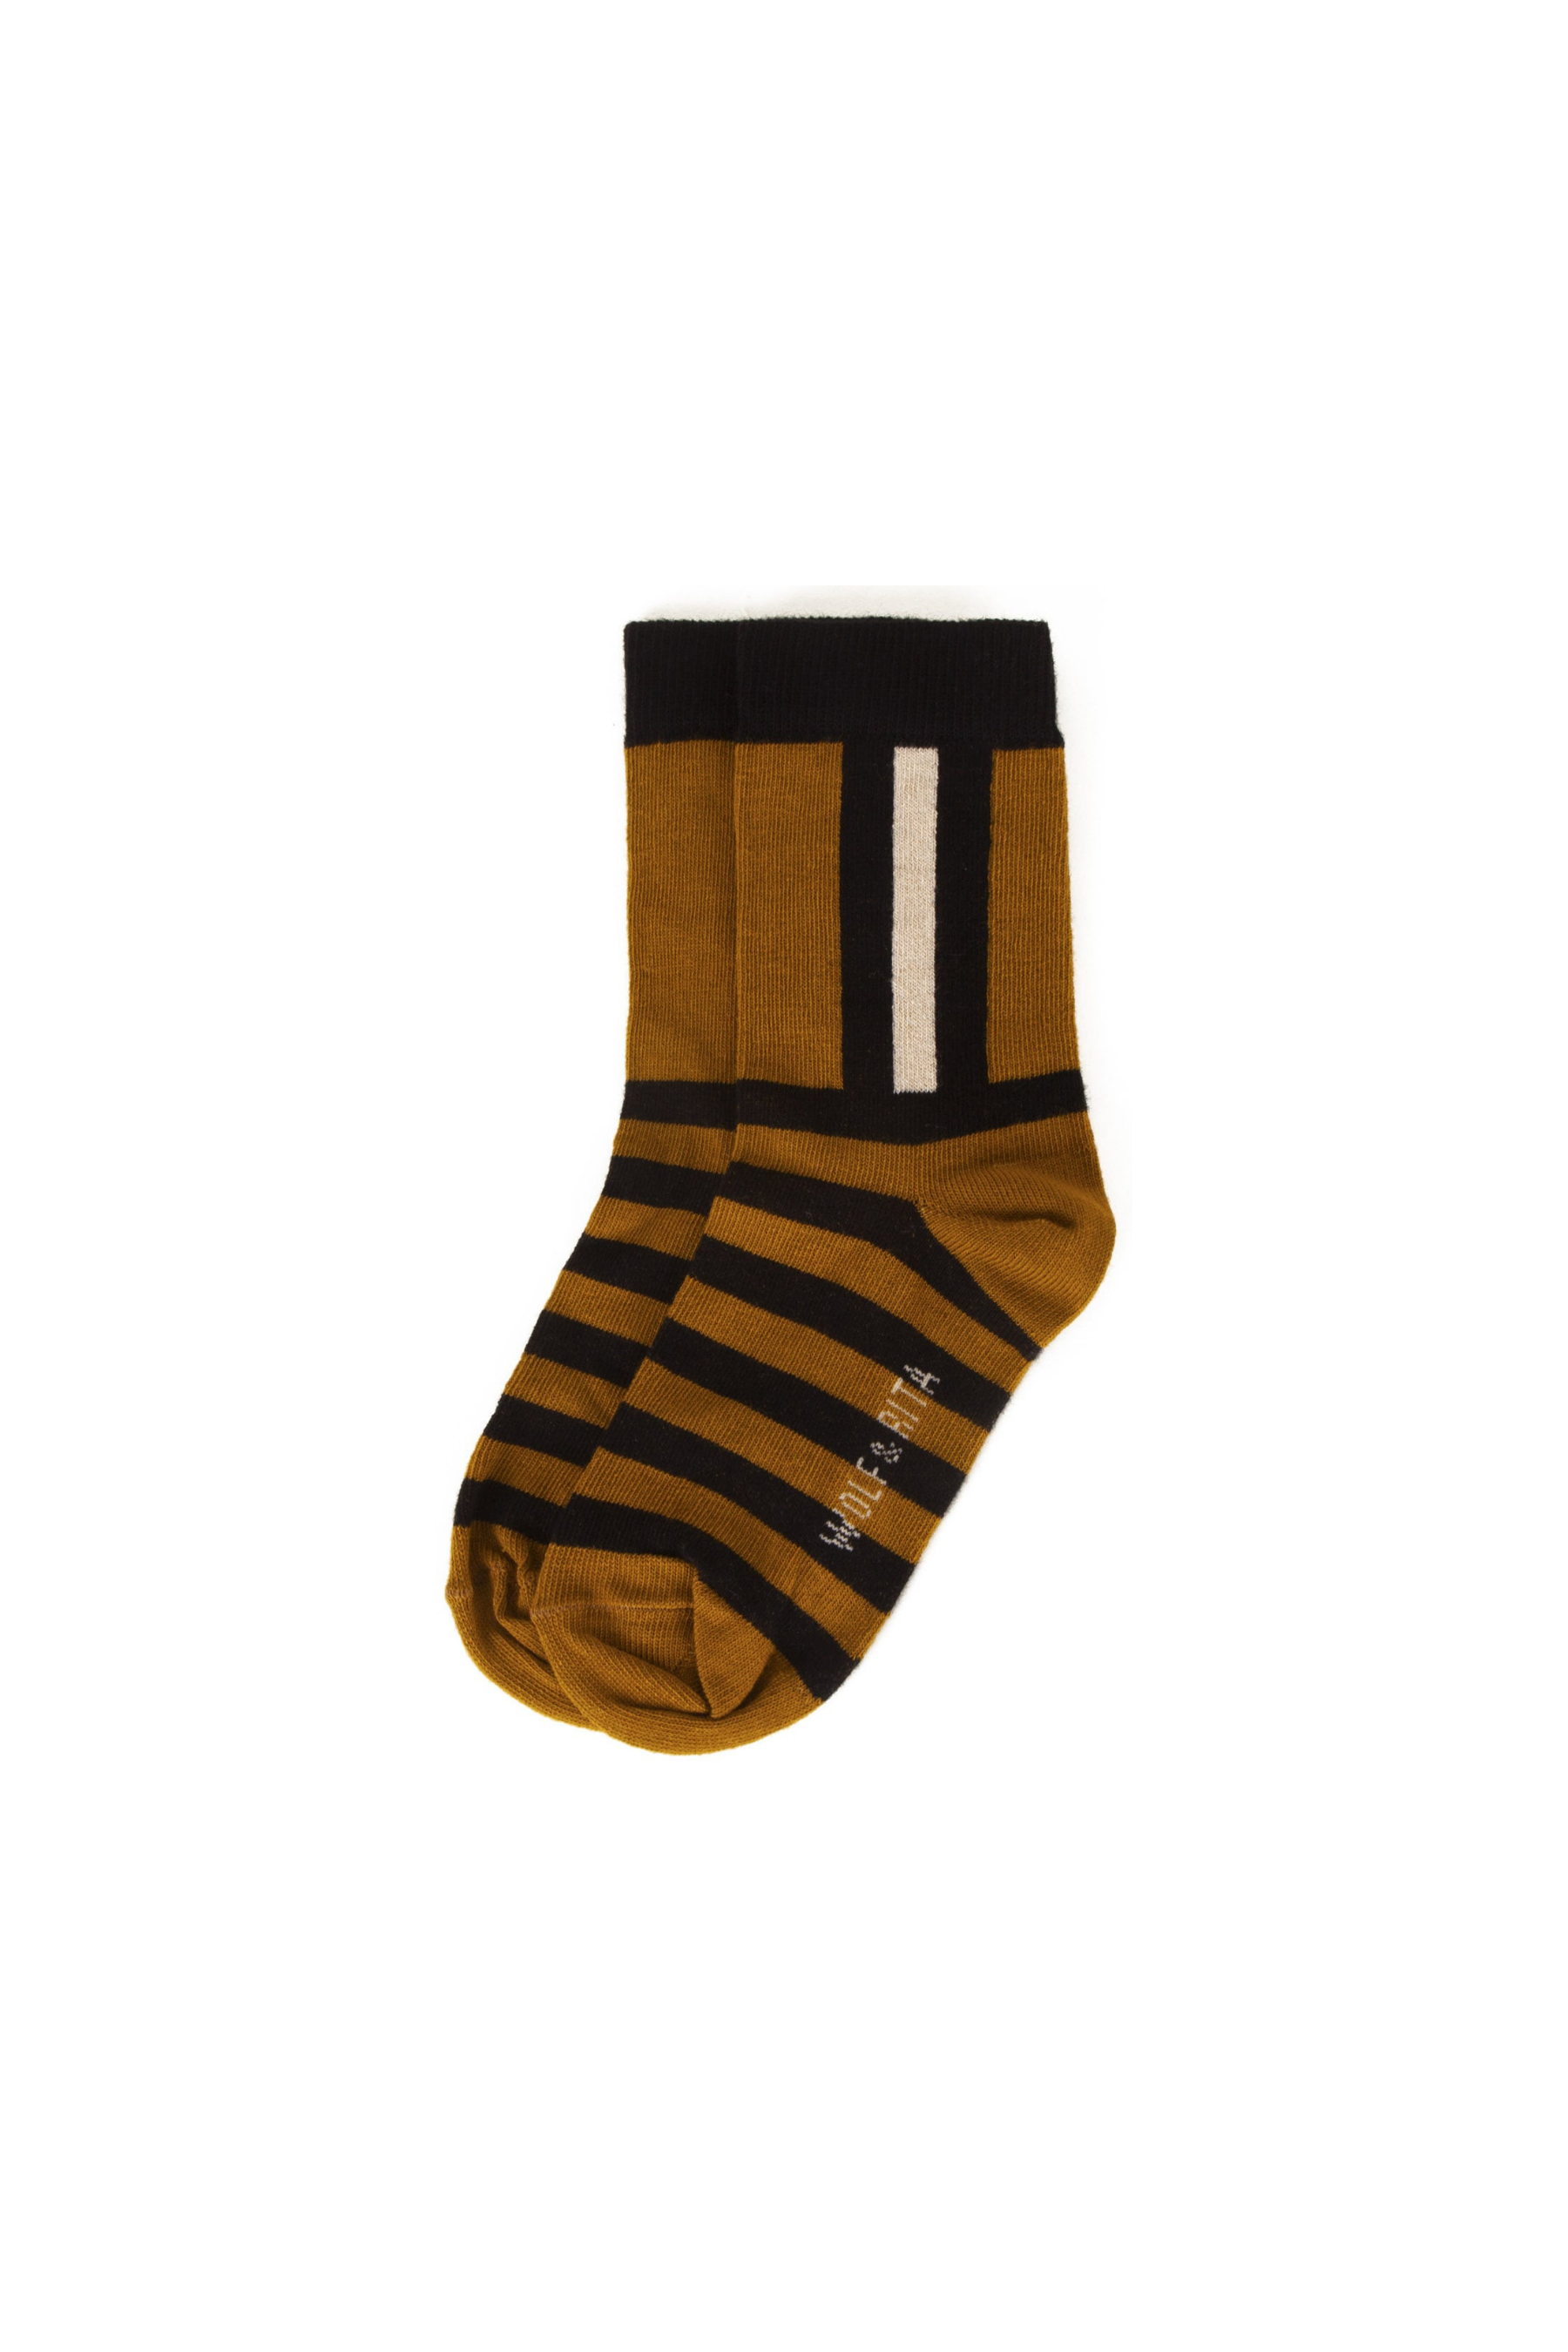 Socks Stripes Honey